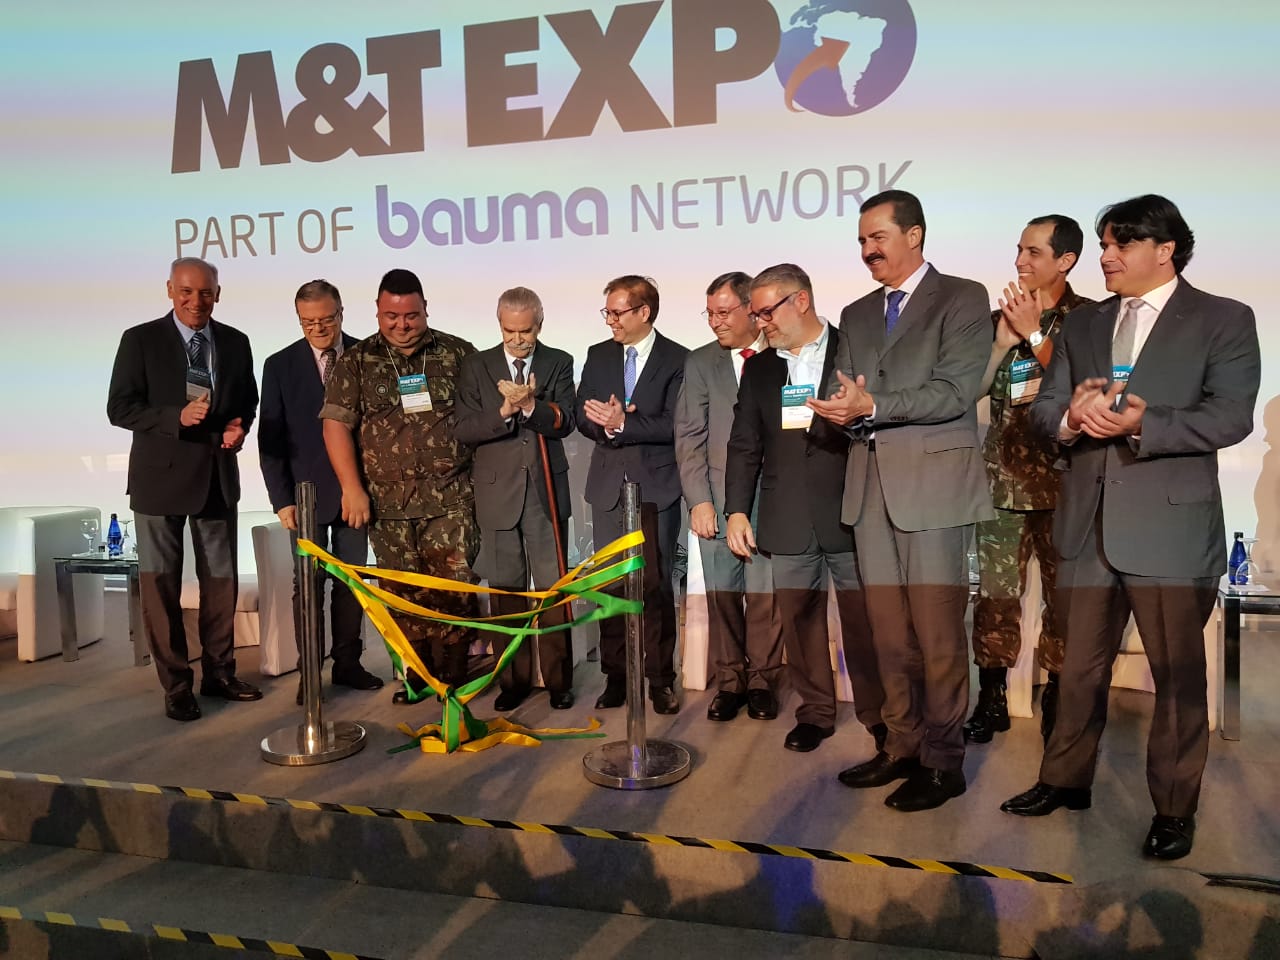 M&T EXPO recebe mais de 800 marcas nacionais e internacionais